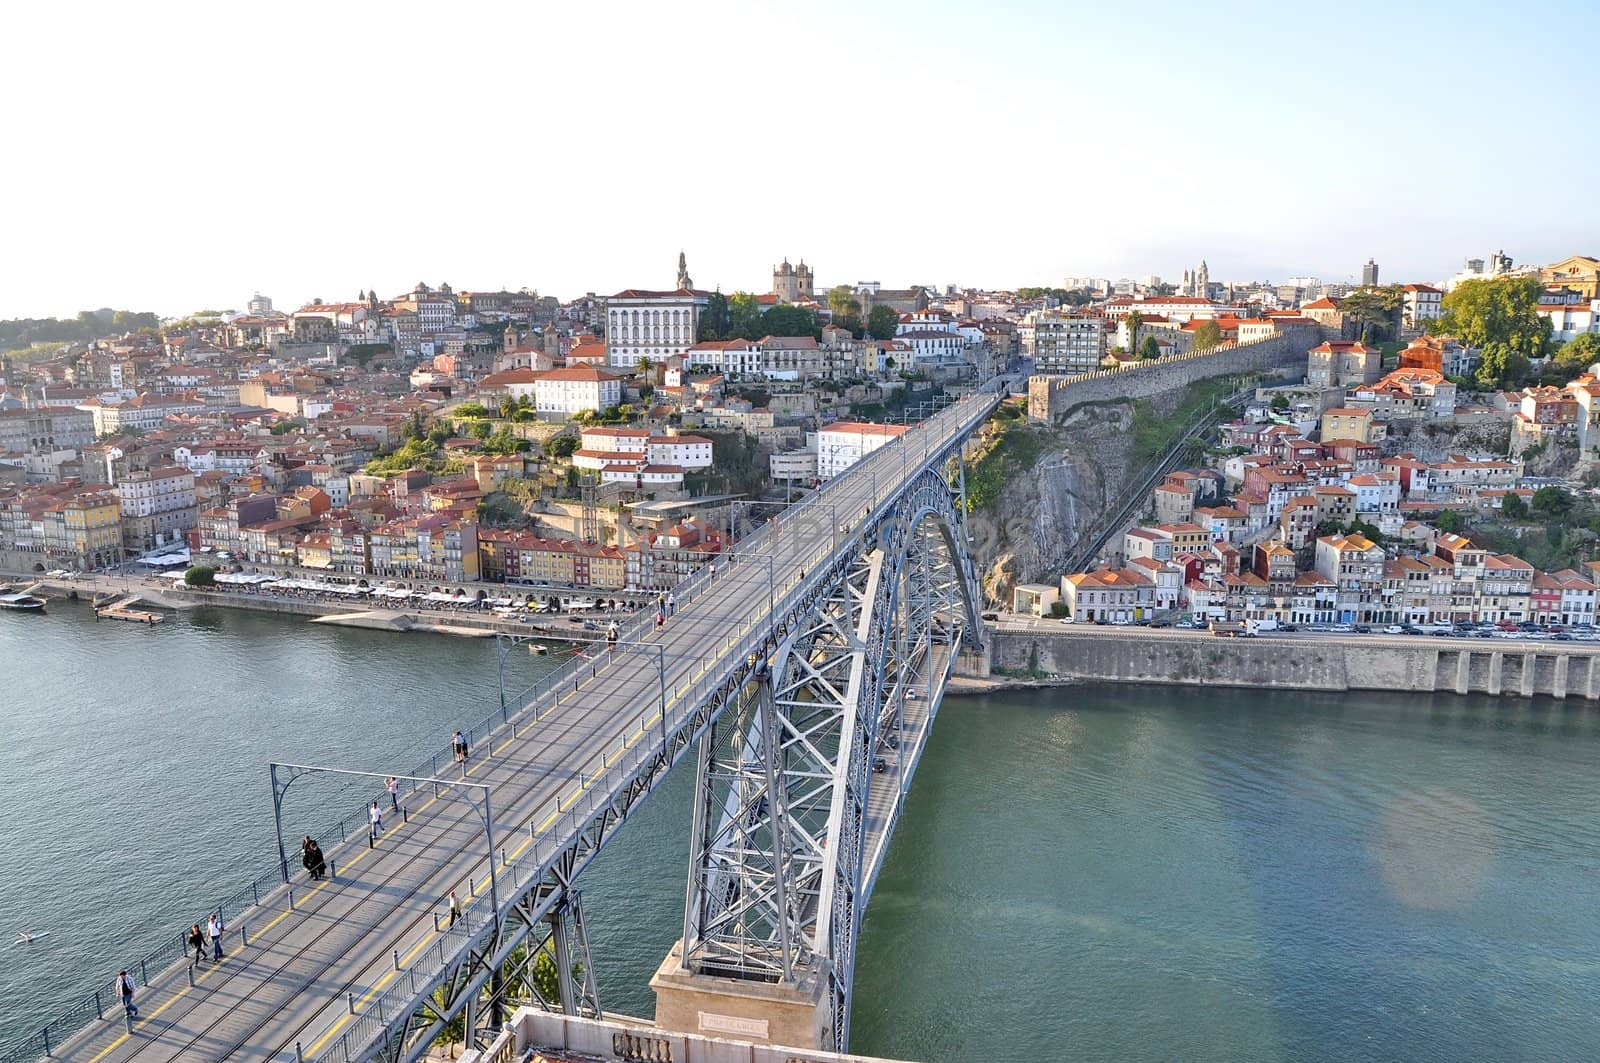 Dom Luis Bridge, Porto by anderm